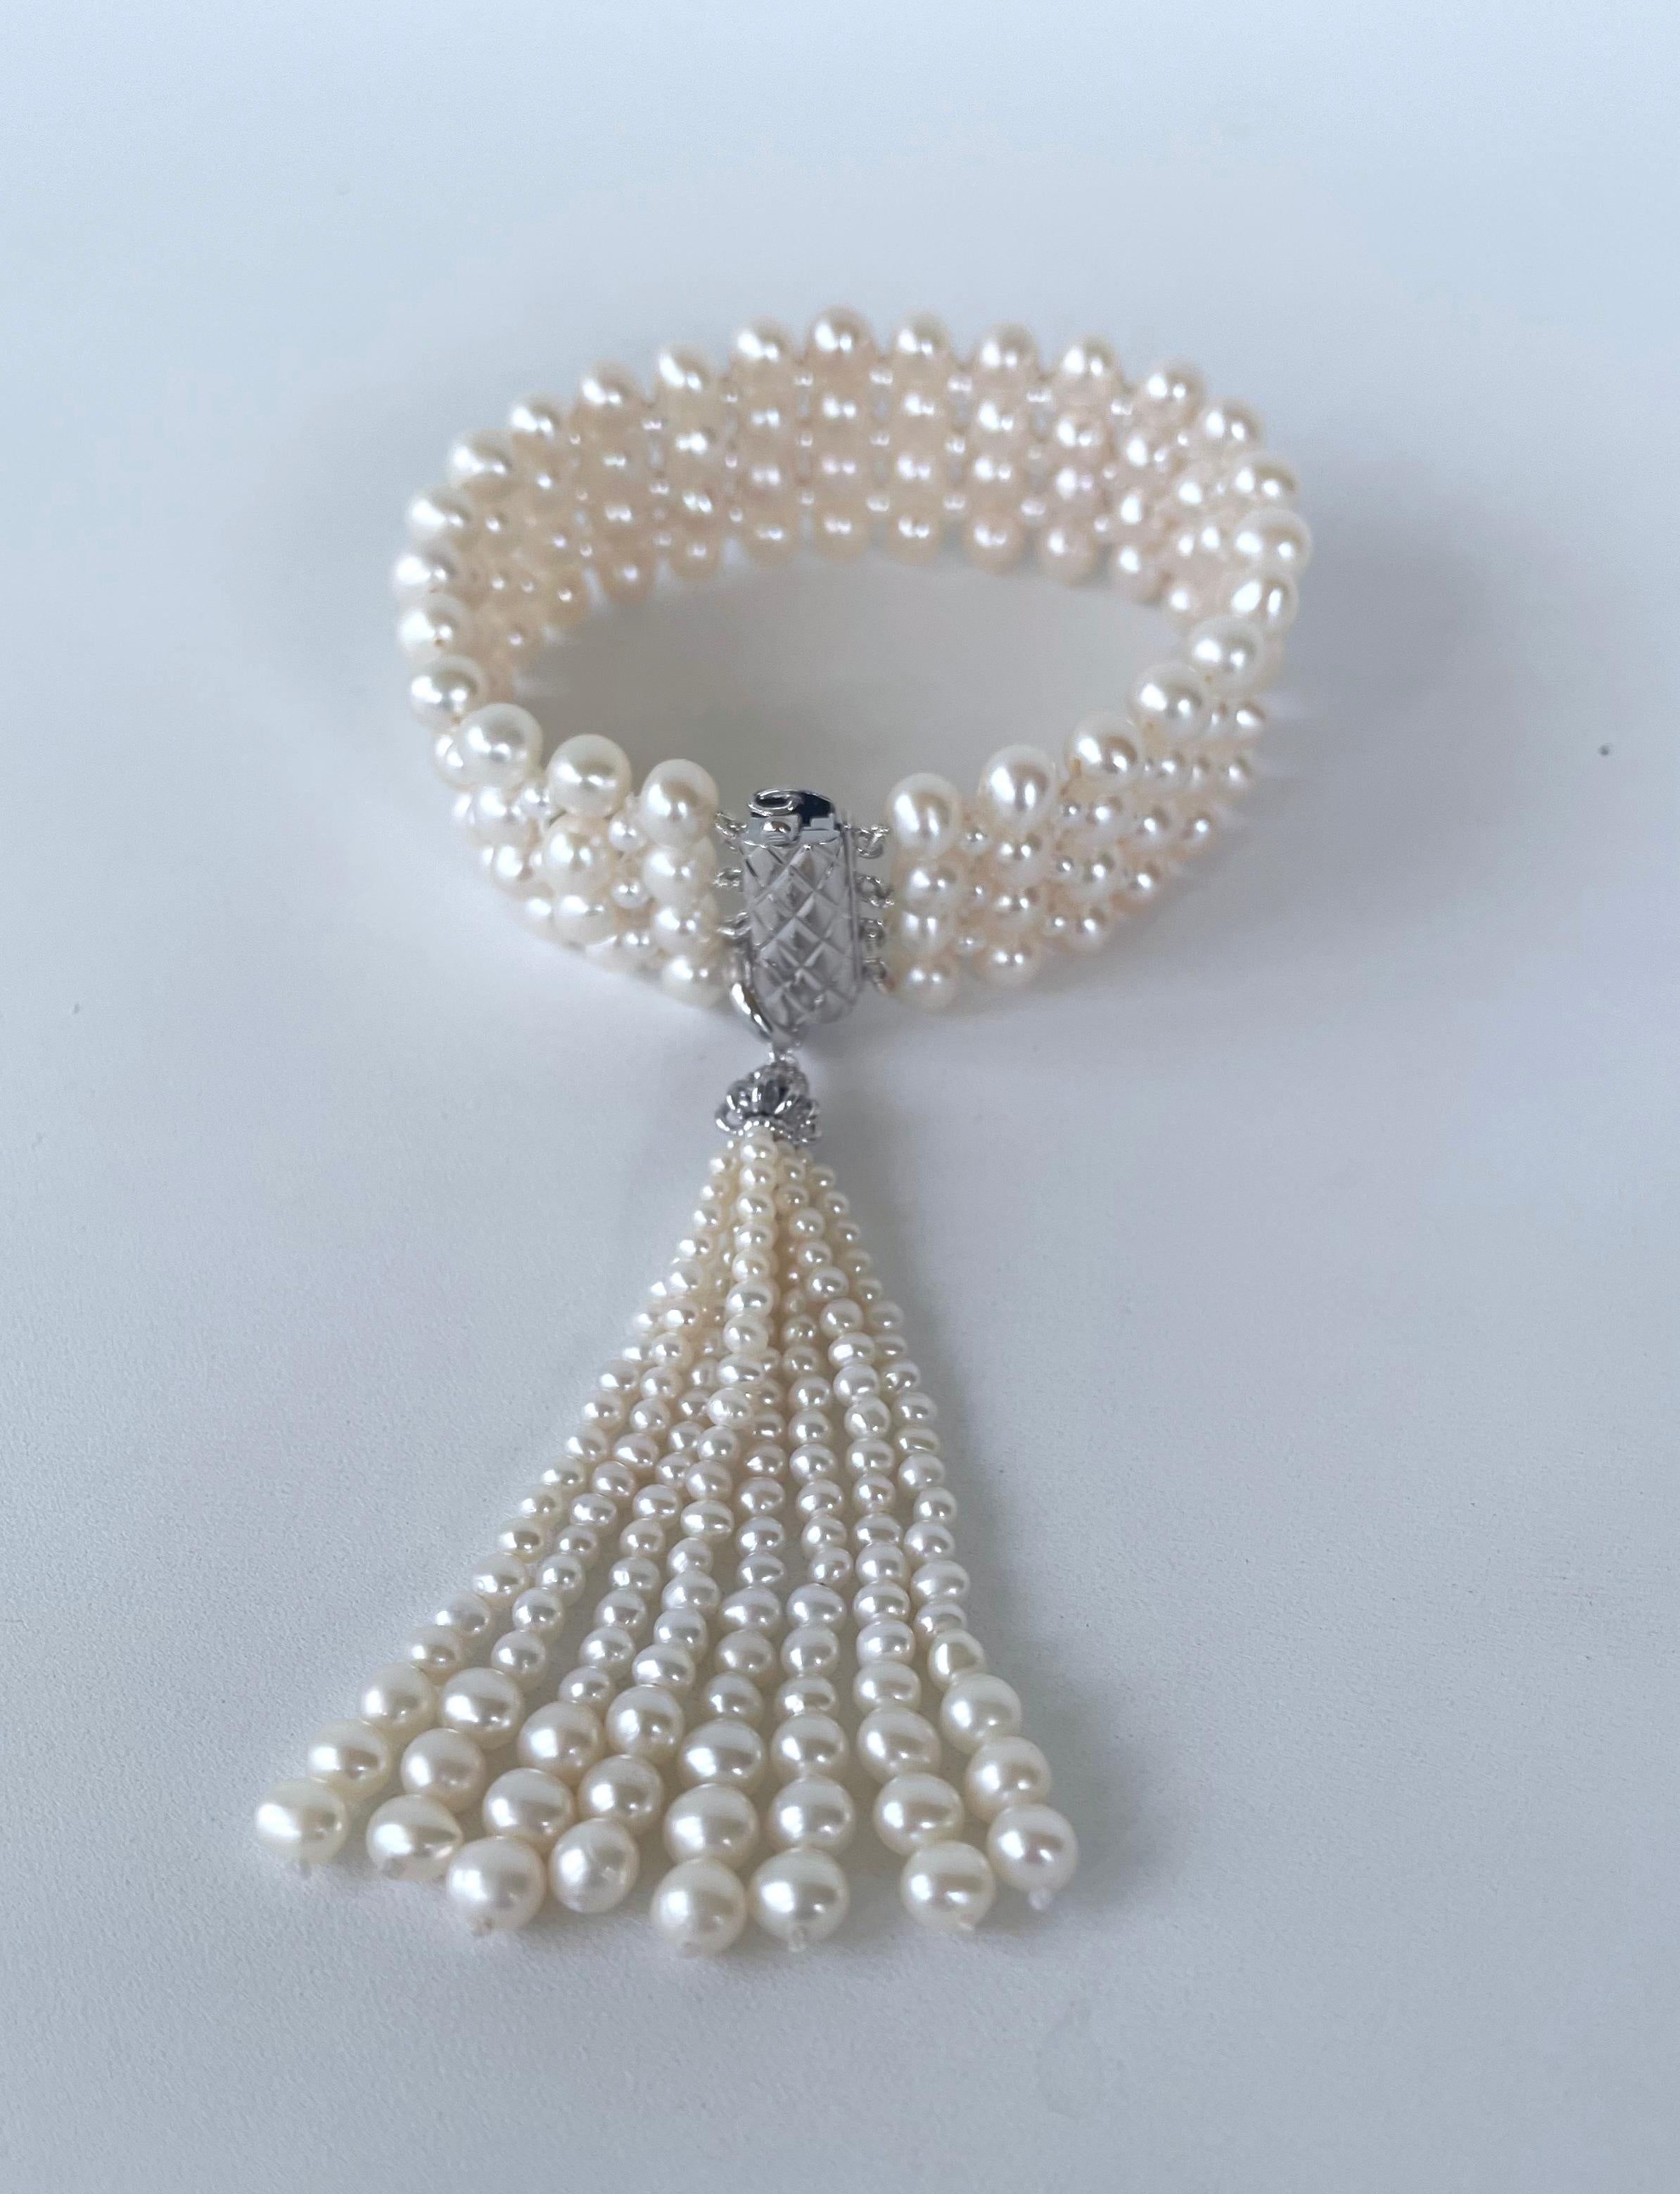 Magnifique bracelet d'inspiration Art Déco des années 1920 par Marina J. Cette superbe pièce présente des perles de culture tressées de façon complexe pour former une sorte de dentelle serrée. Mesurant 7,5 pouces de long, la bande de dentelle se